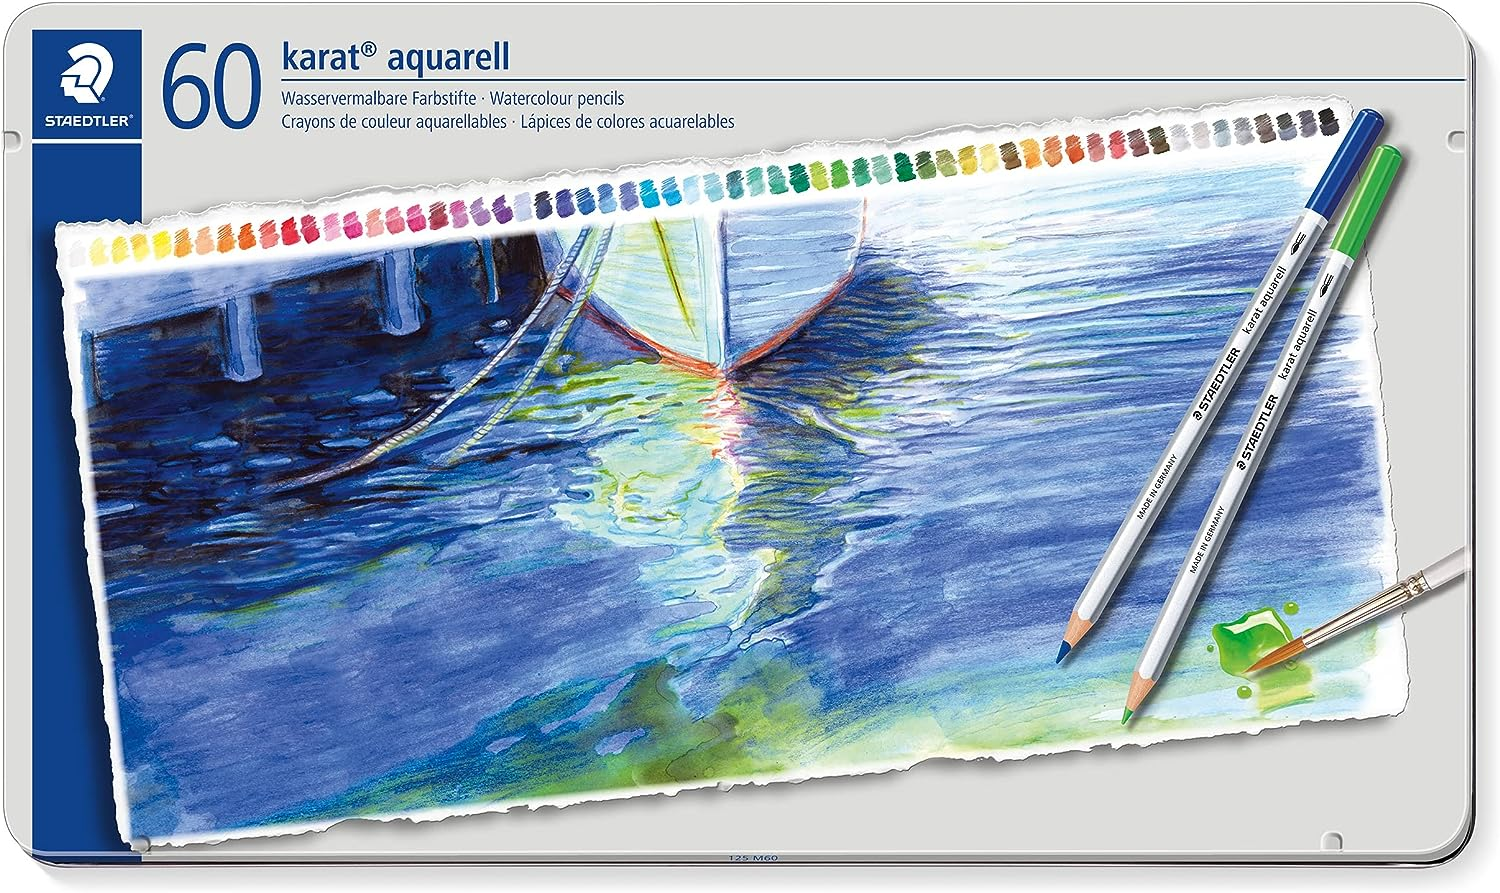 Watercolor pencils by Staedtler